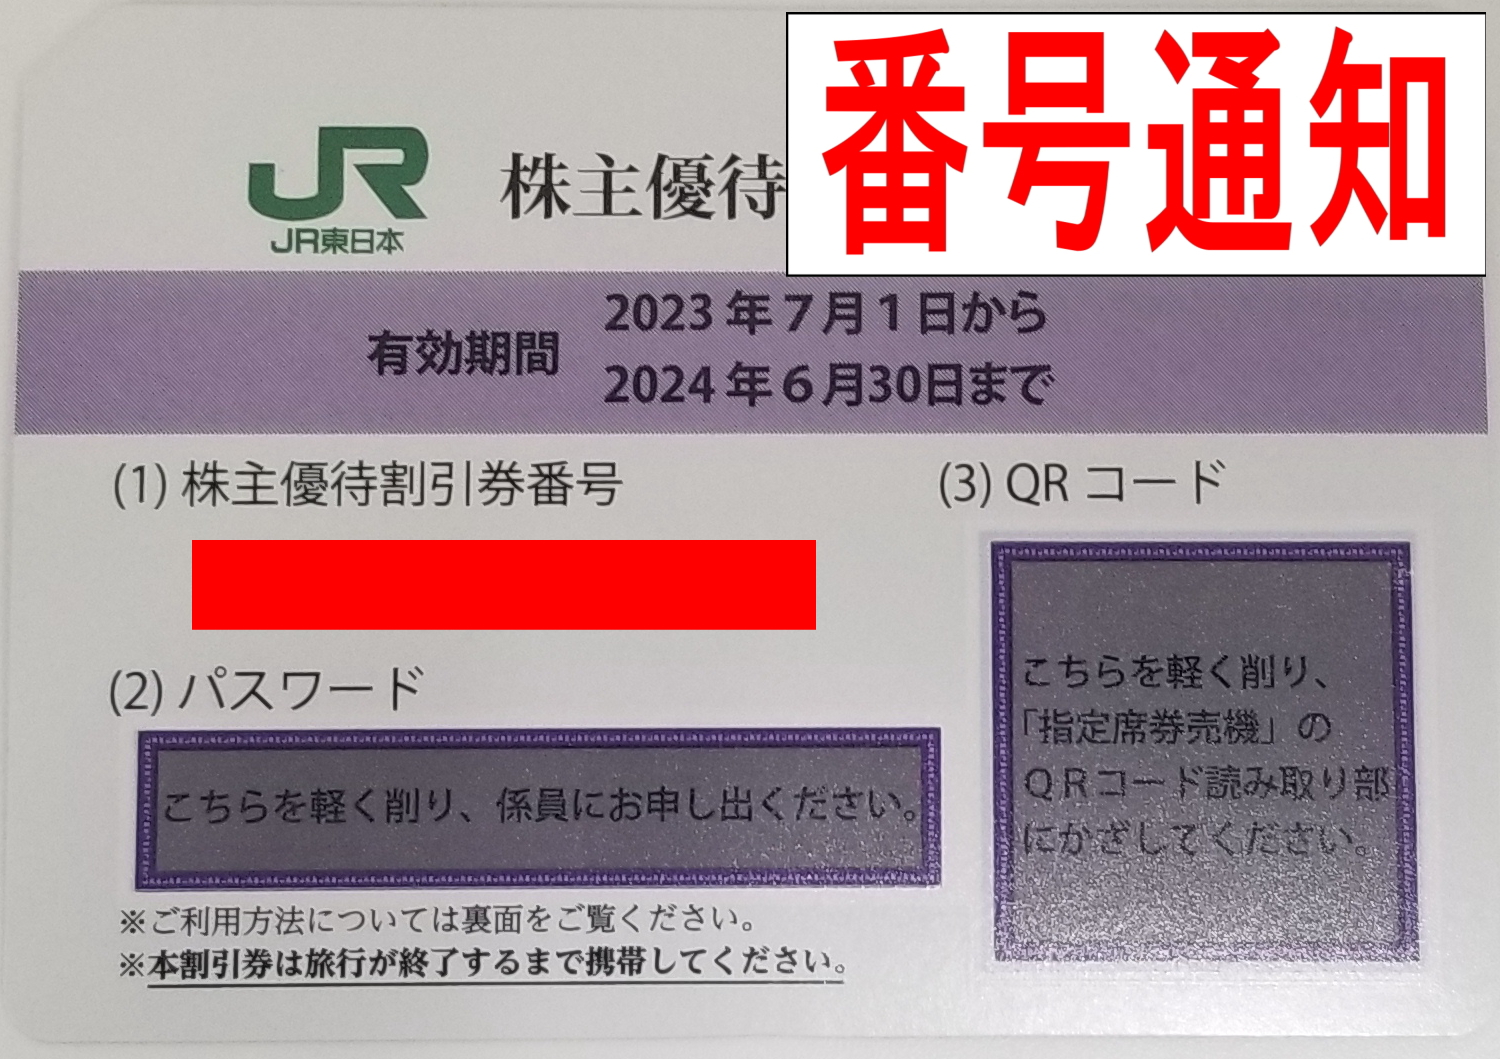 チケットカプリ オンラインストア / 【JR東日本】株主優待40%割引券 